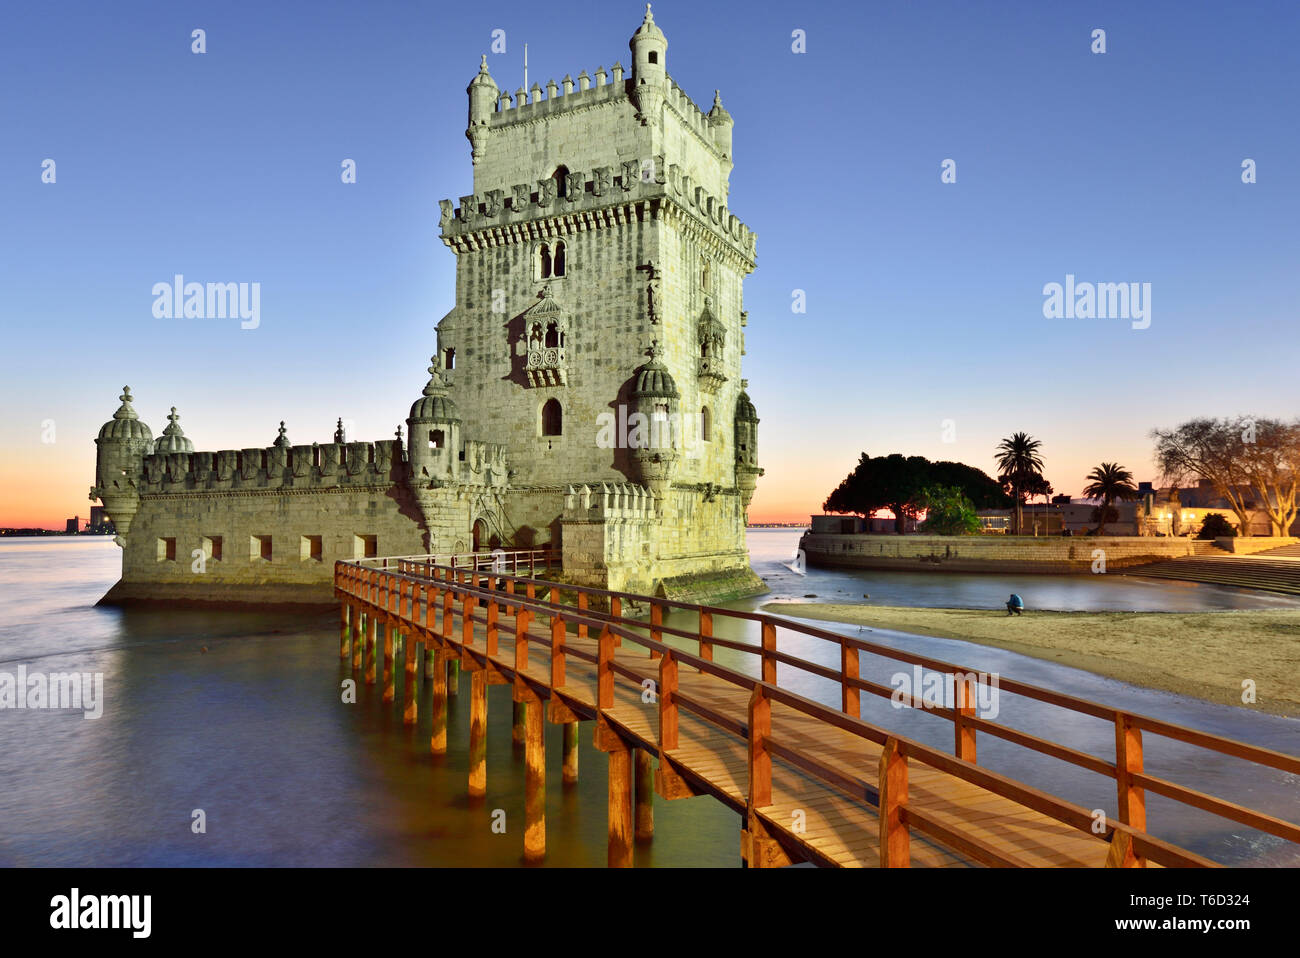 Torre de Belém (Torre de Belem), en el río Tajo, un sitio del Patrimonio Mundial de la UNESCO, construido en el siglo XVI en estilo manuelino portugués en penumbra. Foto de stock